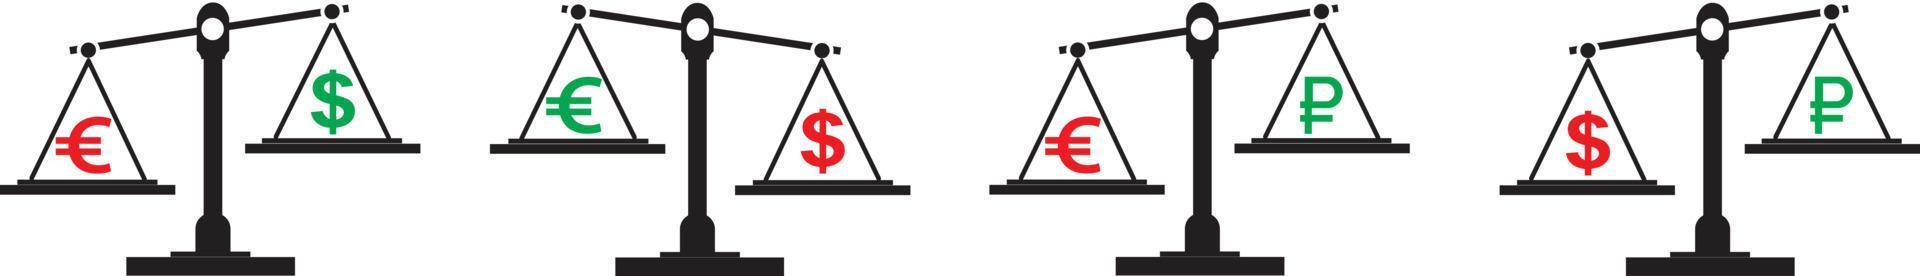 disegno esplicativo utilizzando un saldo di dollaro ed euro, contro il materiale illustrativo vettoriale del rublo russo